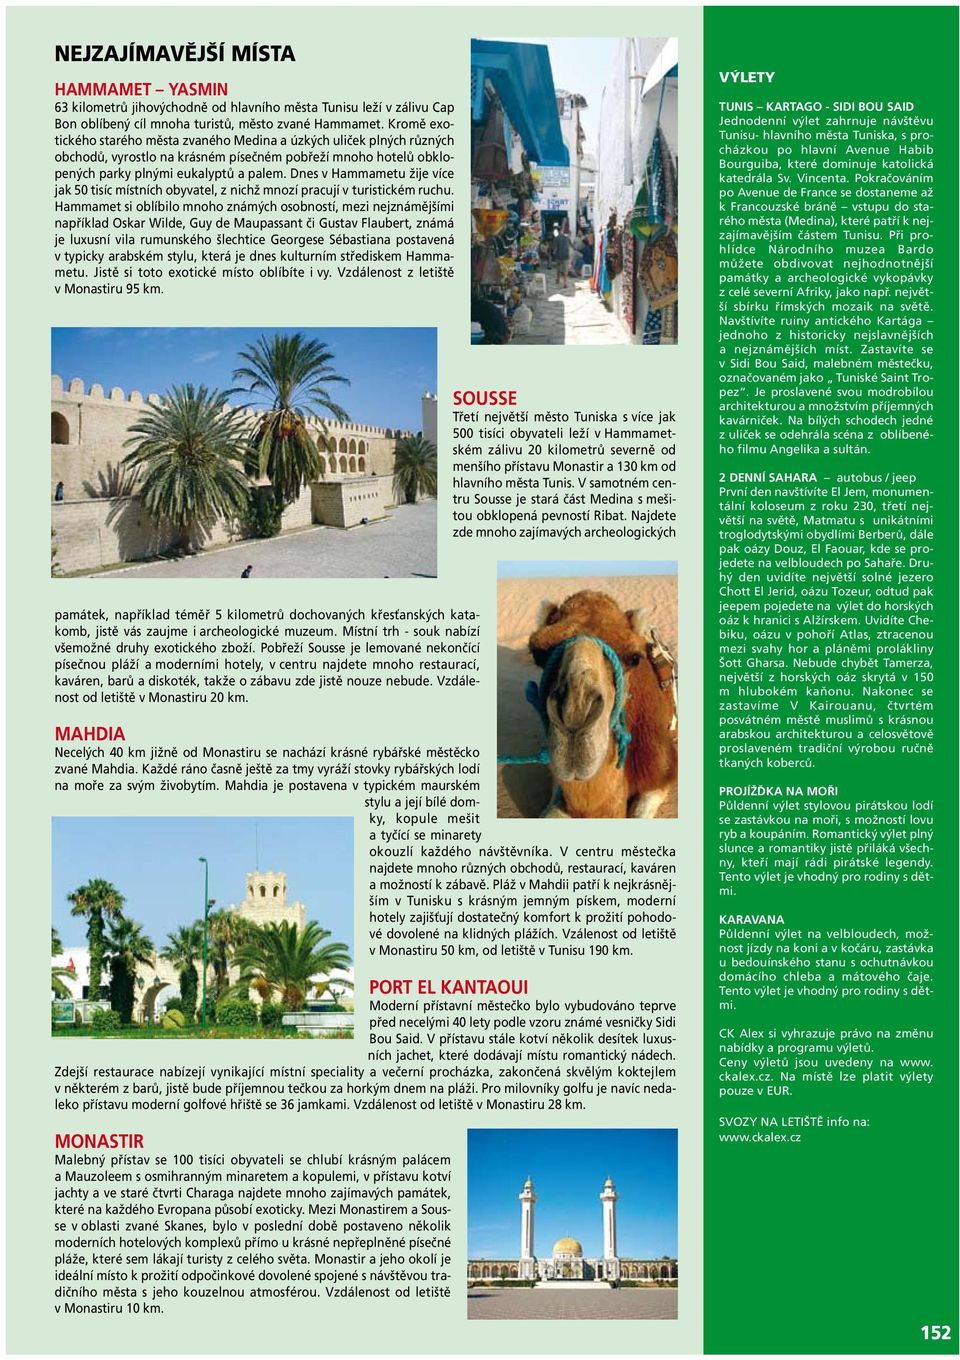 Dnes v Hammametu žije více jak 50 tisíc místních obyvatel, z nichž mnozí pracují v turistickém ruchu.